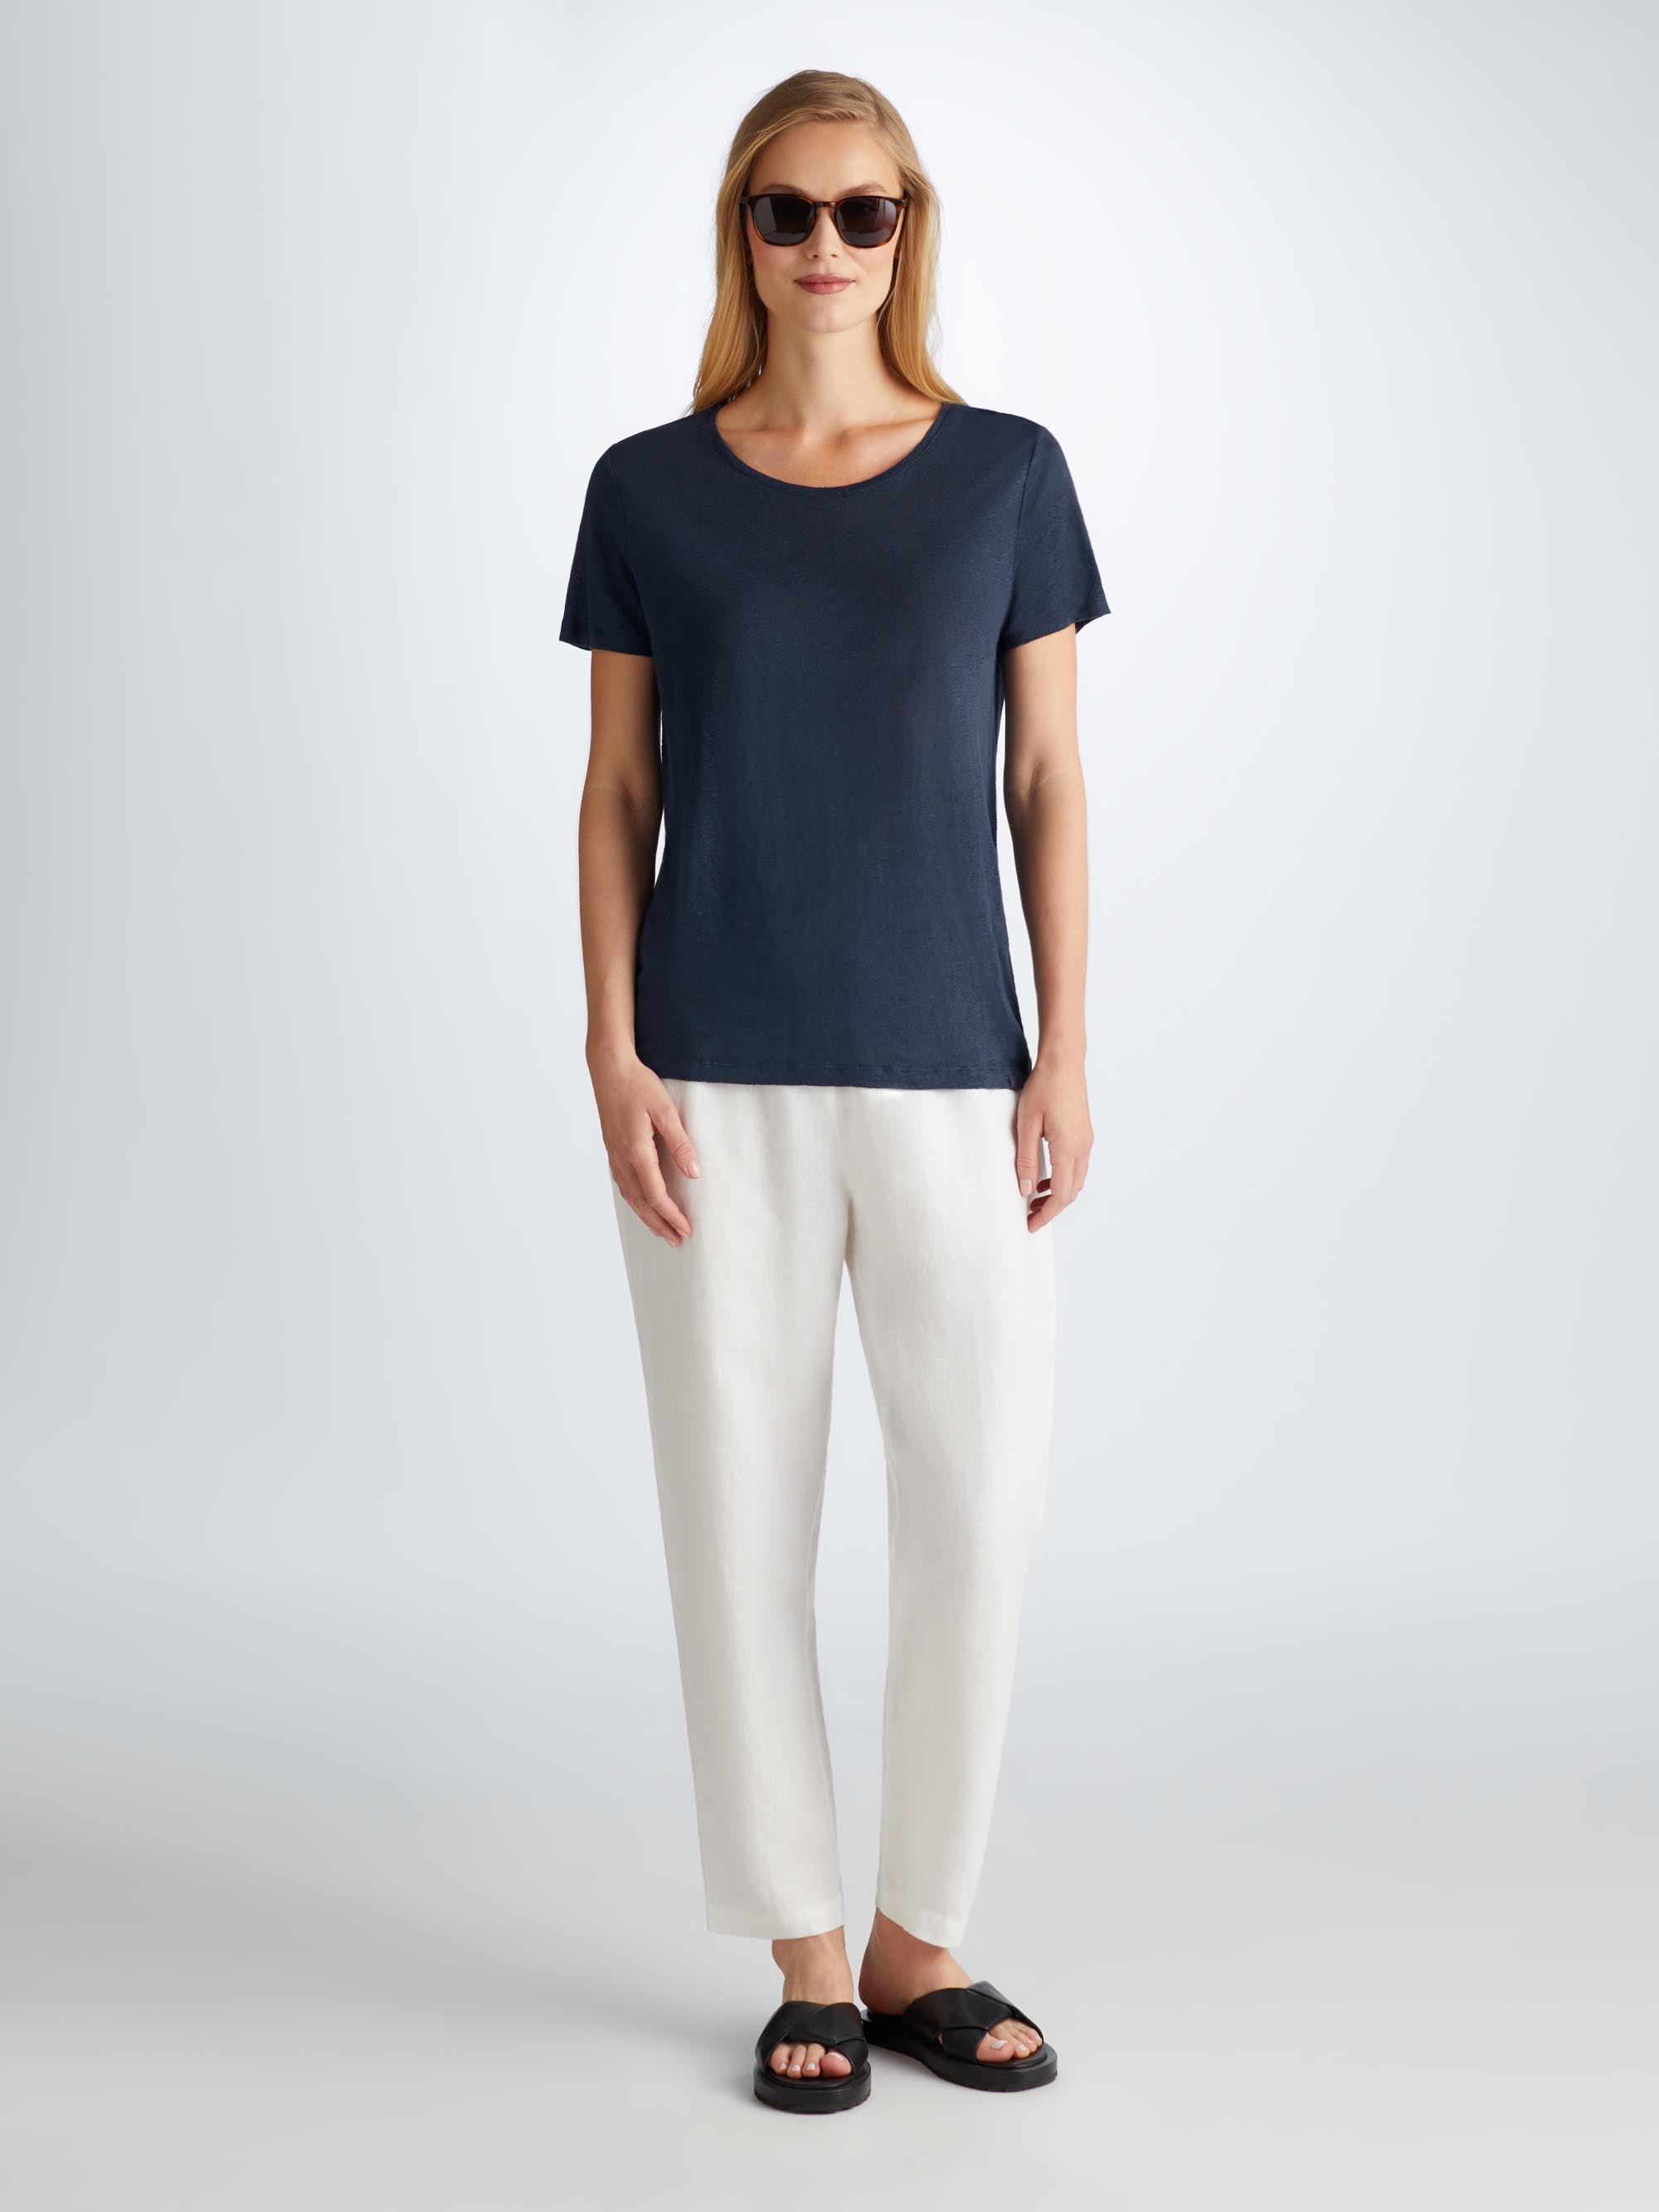 Women's T-Shirt Jordan Linen Navy